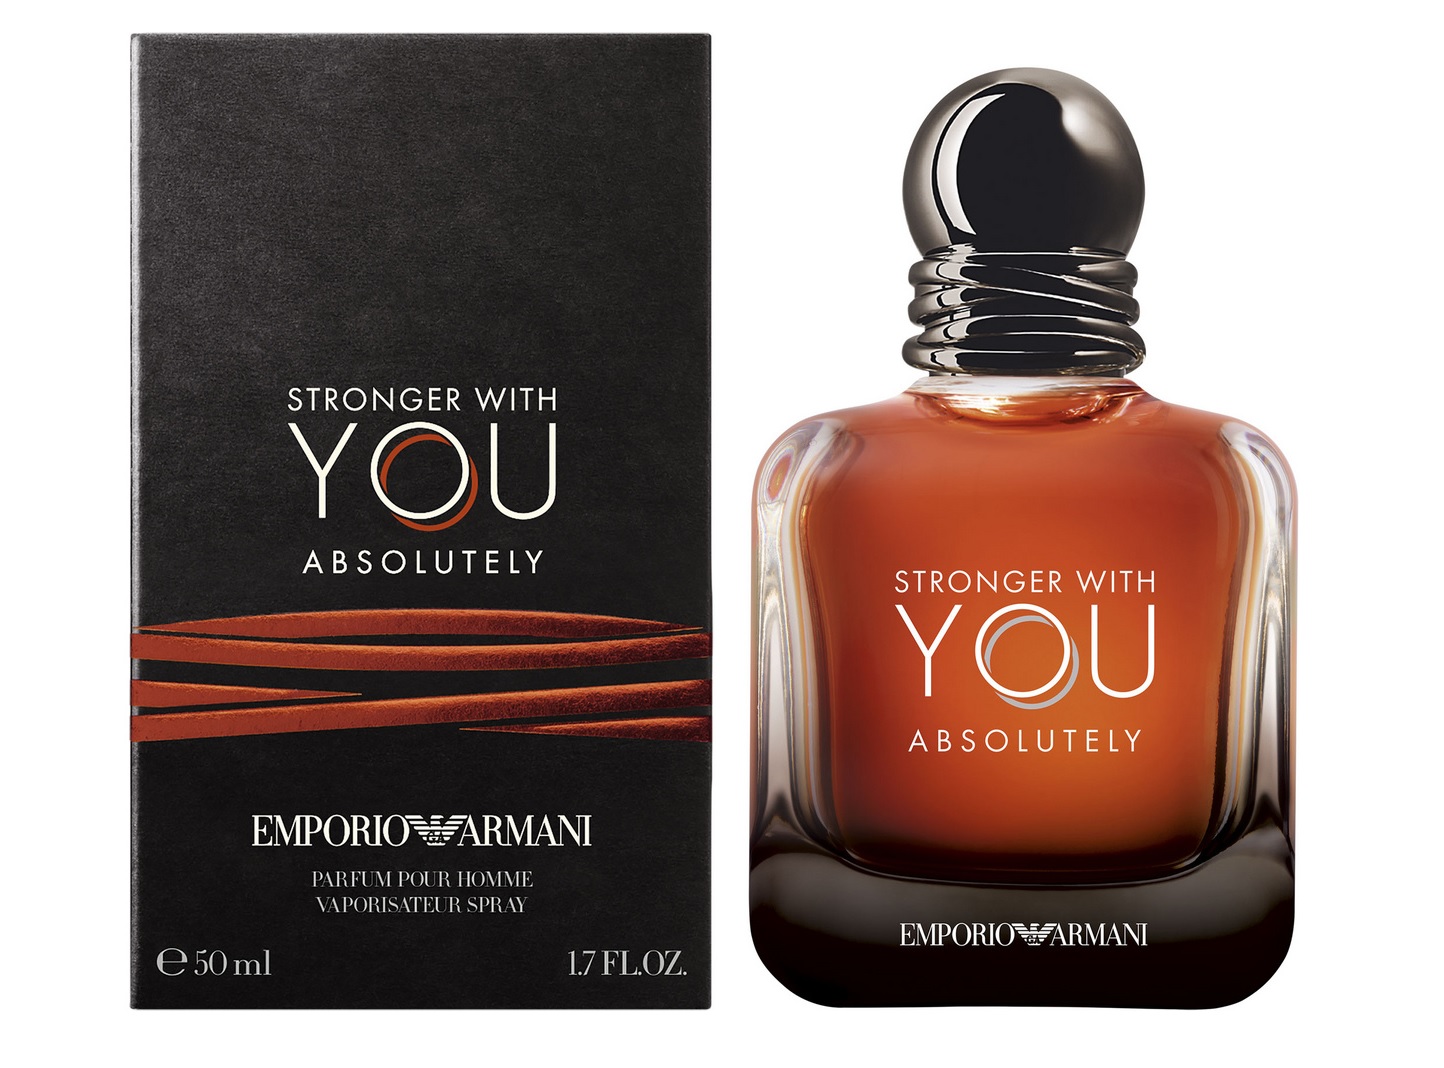 Armani - Emporio Armani Stronger With You Absolutely ~ Parfumuri noi